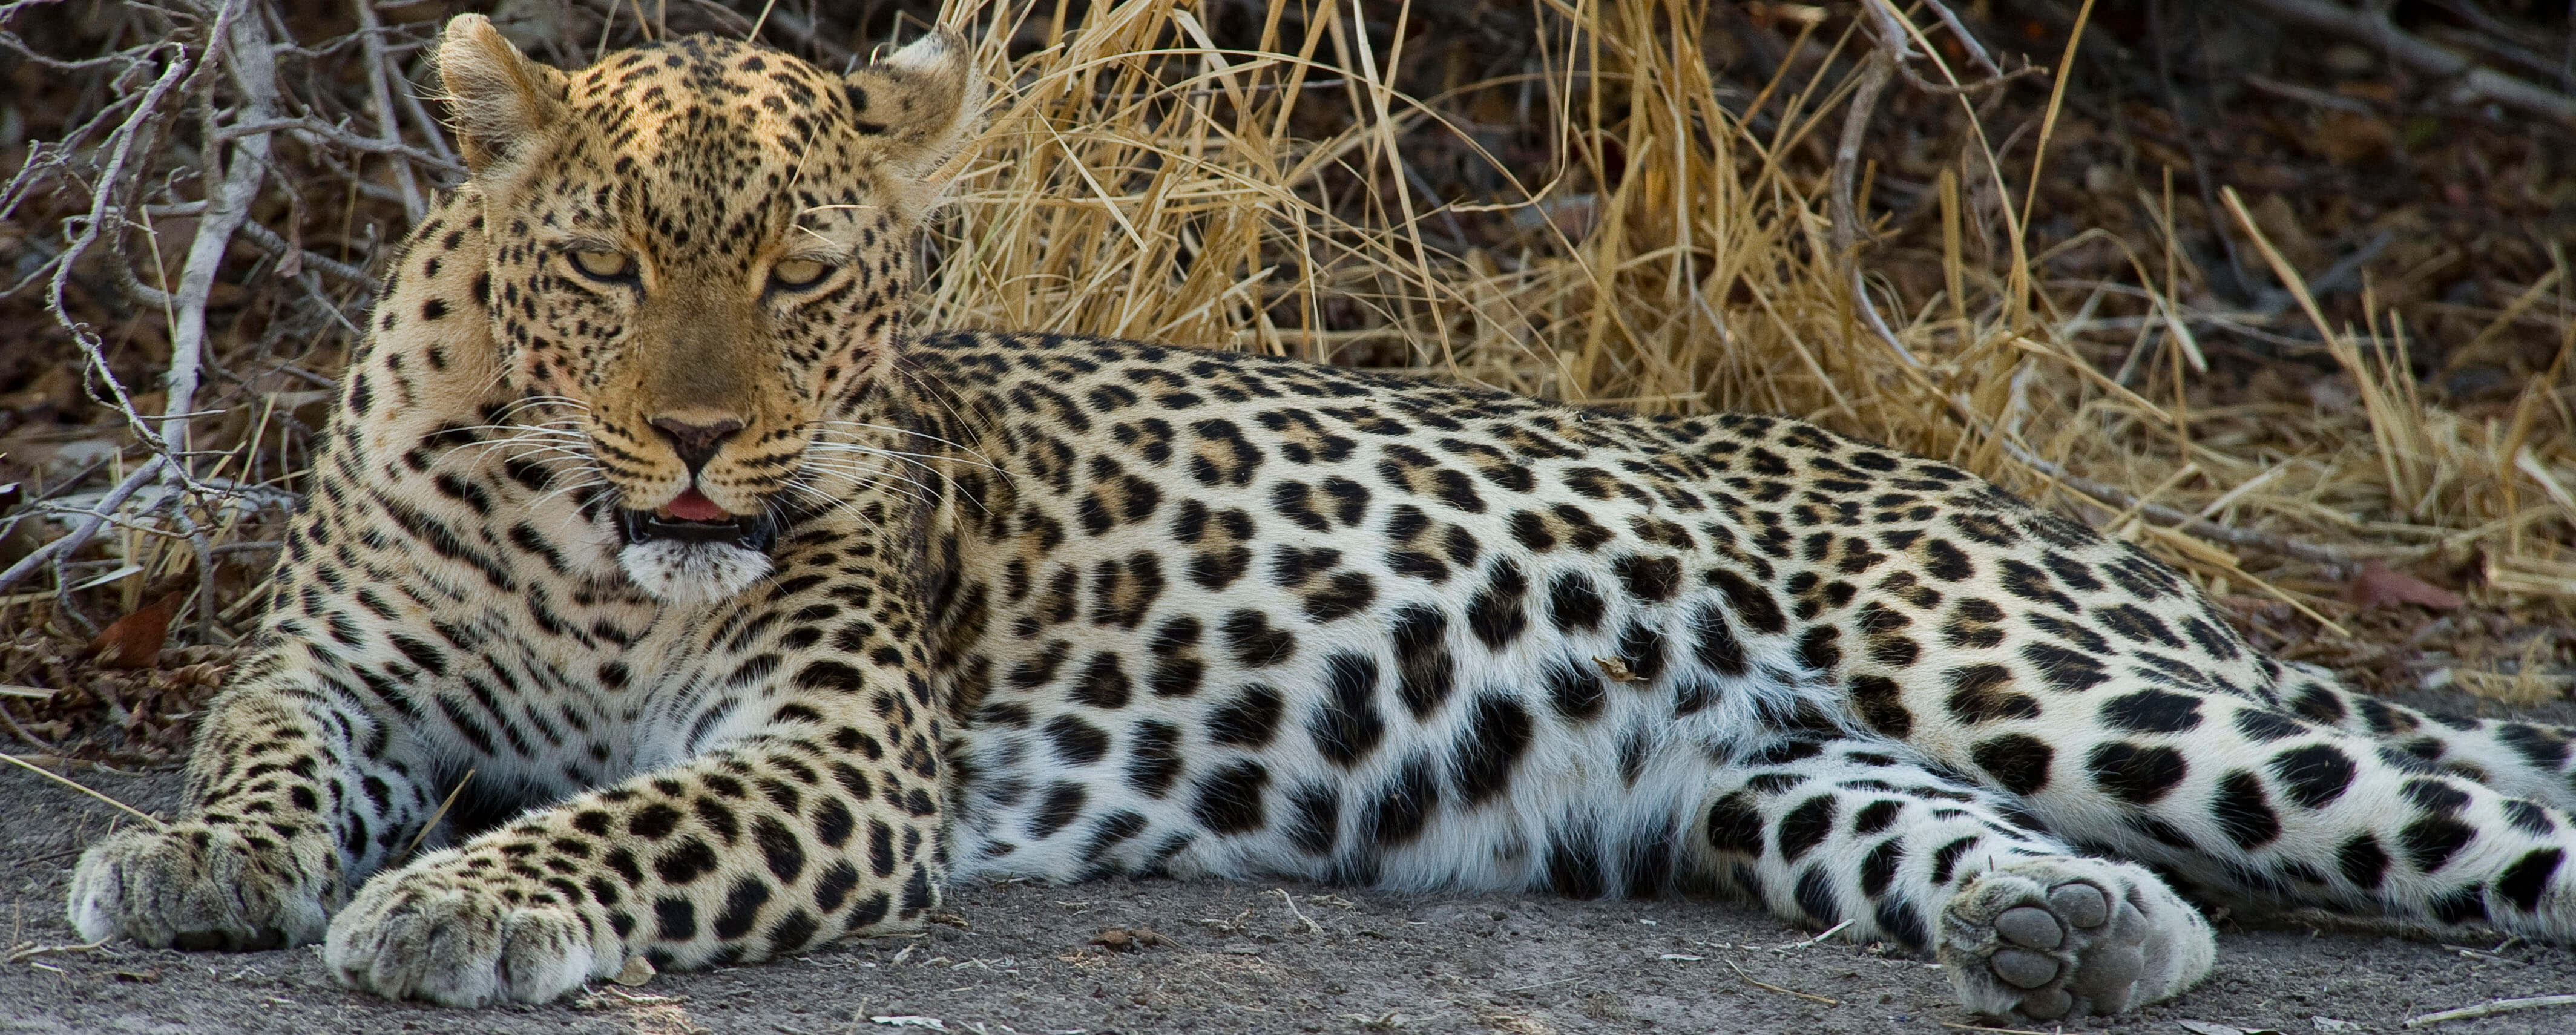 Leopard in Zambia, one of the big five safari animals